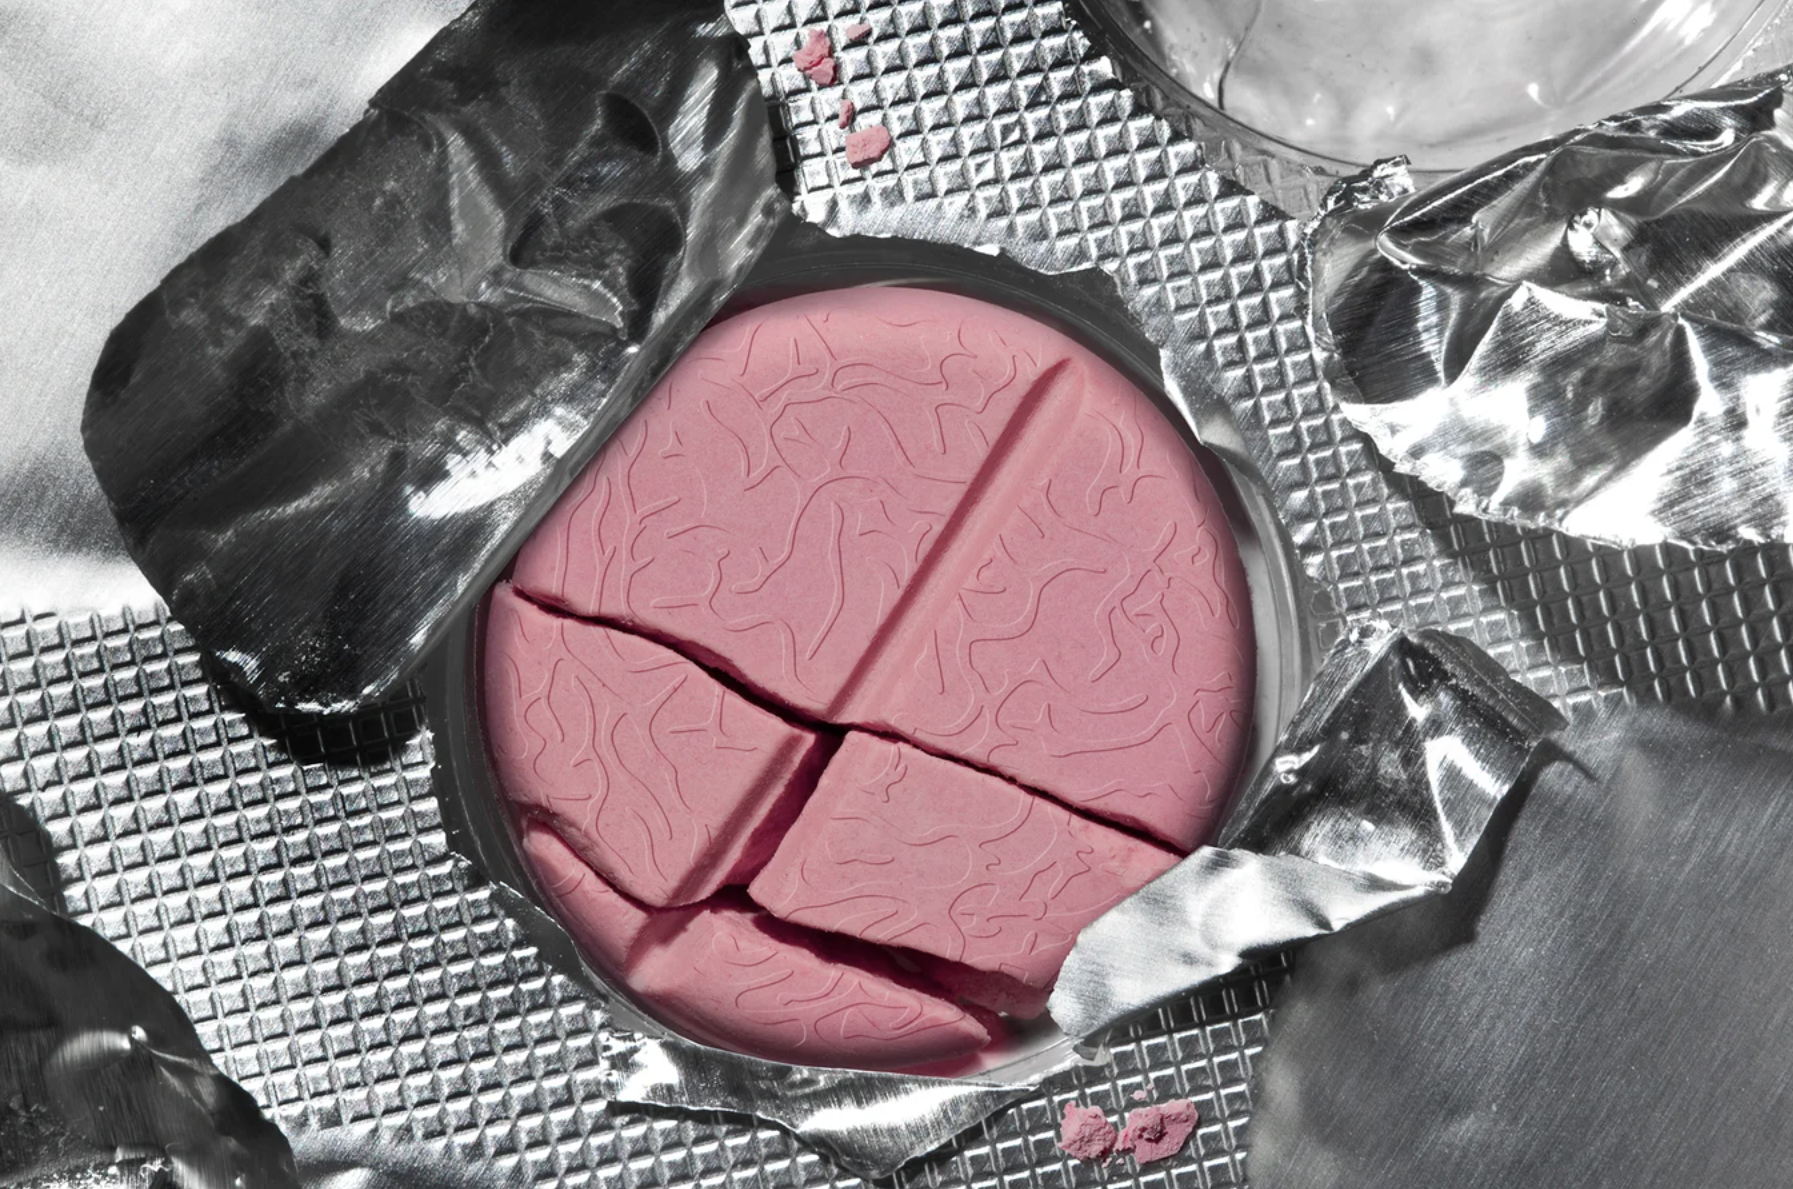 A pink pill resembling a brain cracks